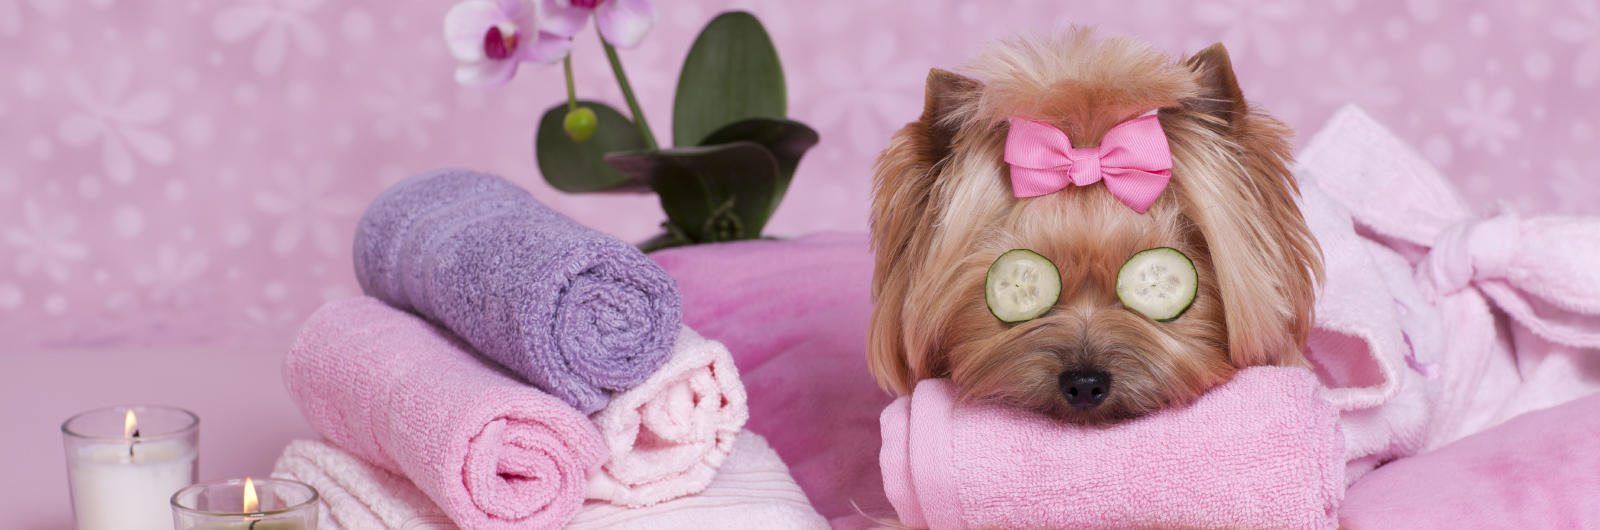 Le migliori spa per cani